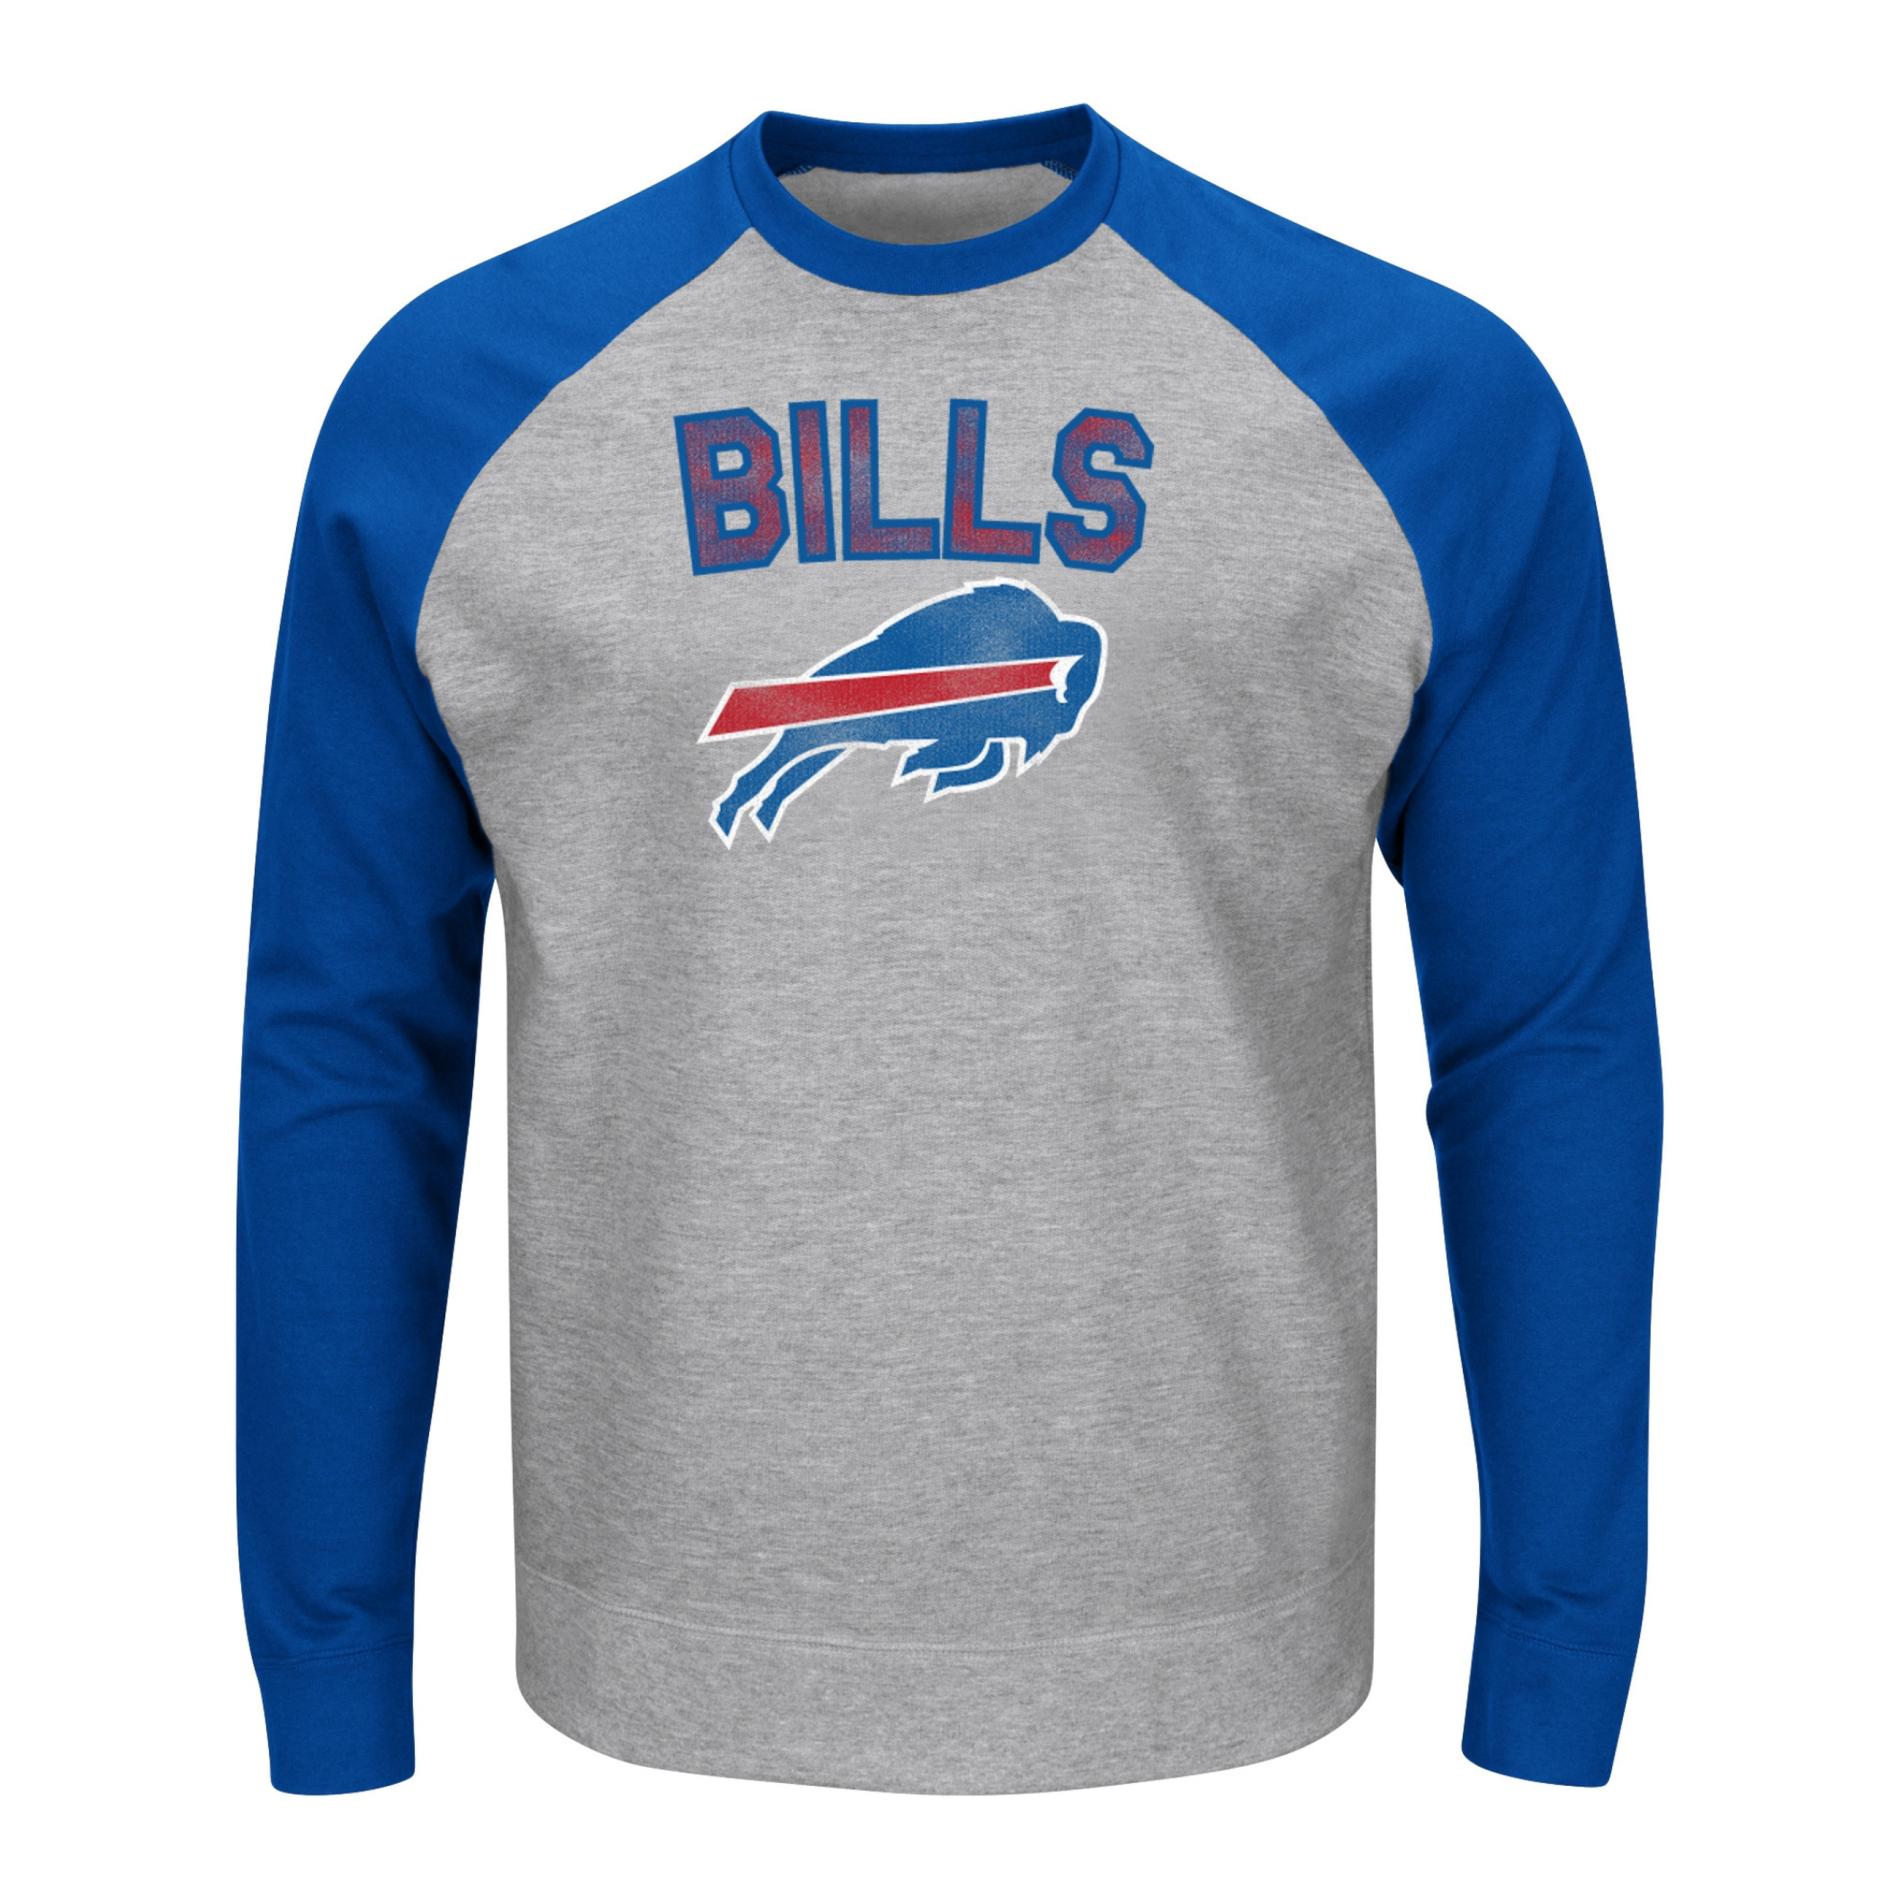 NFL Men's Long-Sleeve Shirt - Buffalo Bills